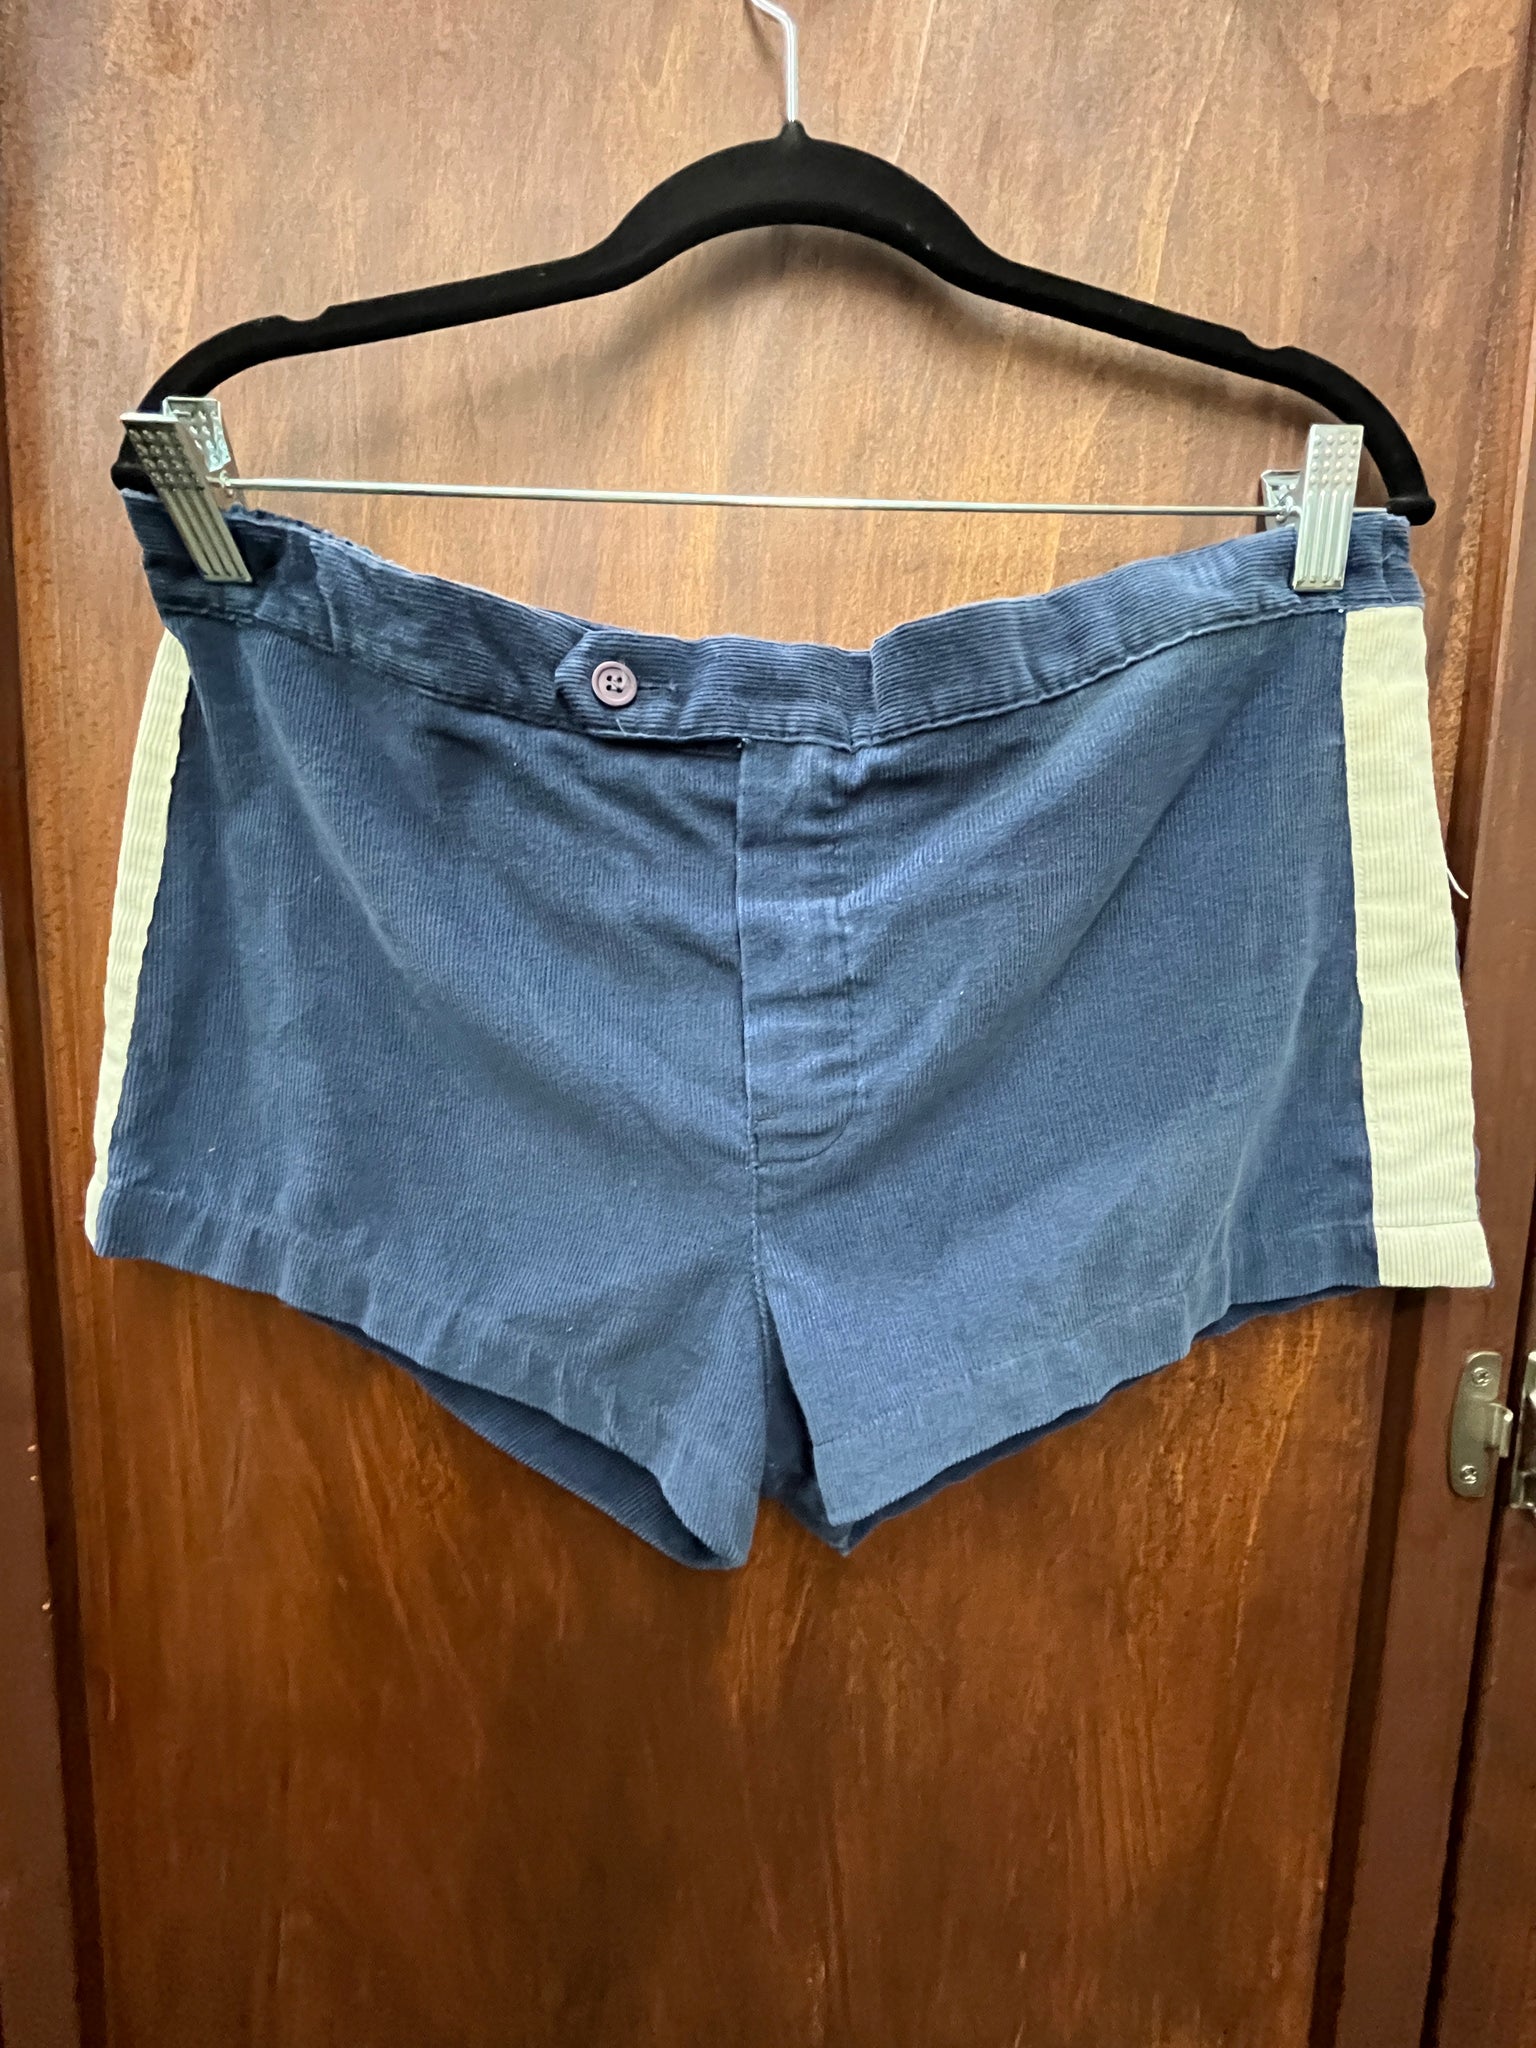 1970s mens navy cord shorts